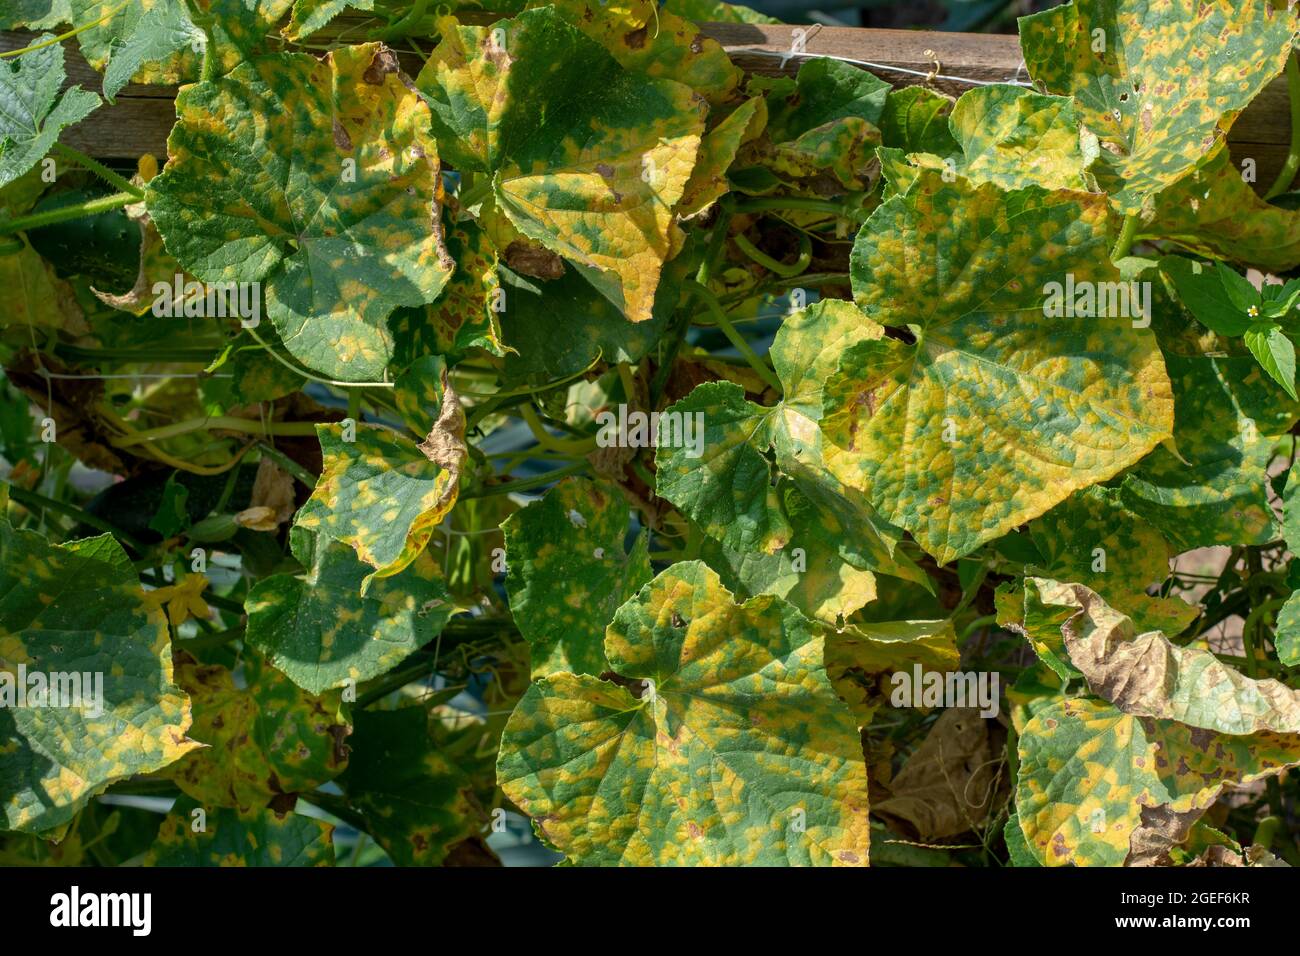 Foglie di cetriolo infettate da muffa (Pseudoperonospora cubensis) nel giardino. Malattia dei cocerbits. Foto Stock